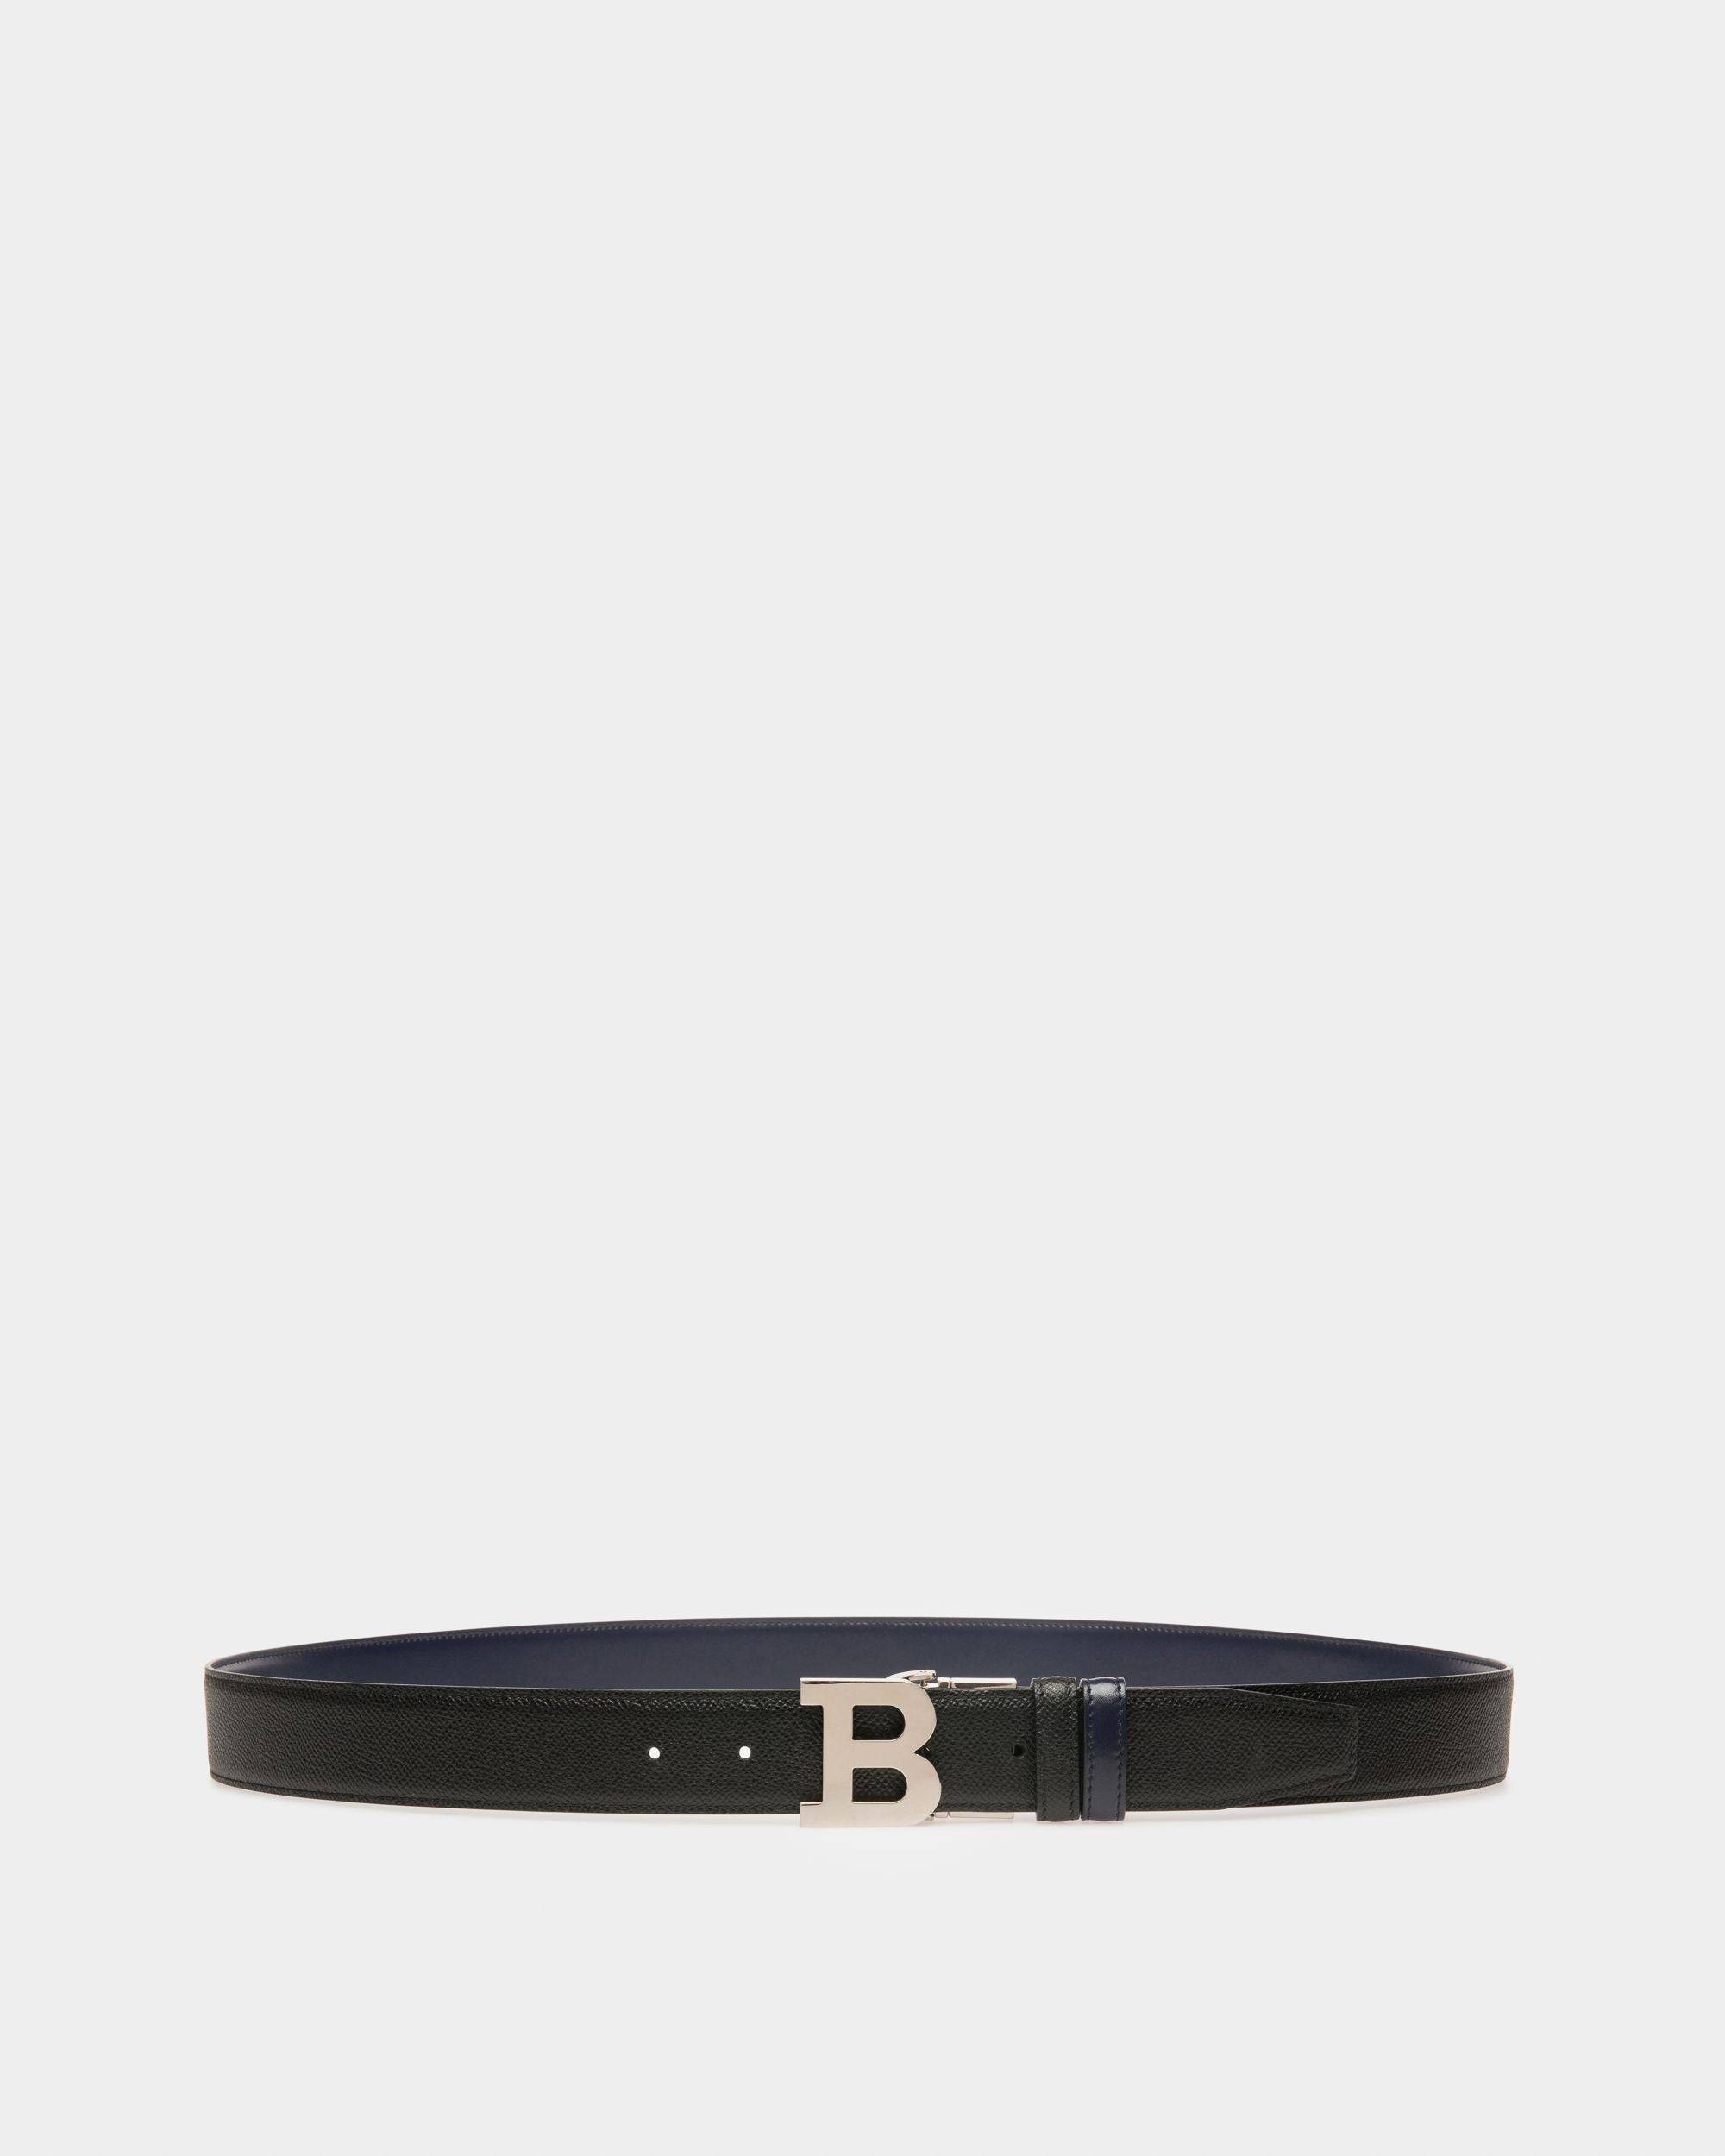 B Buckle Leather 35mm Belt In Black & Navy - Men's - Bally